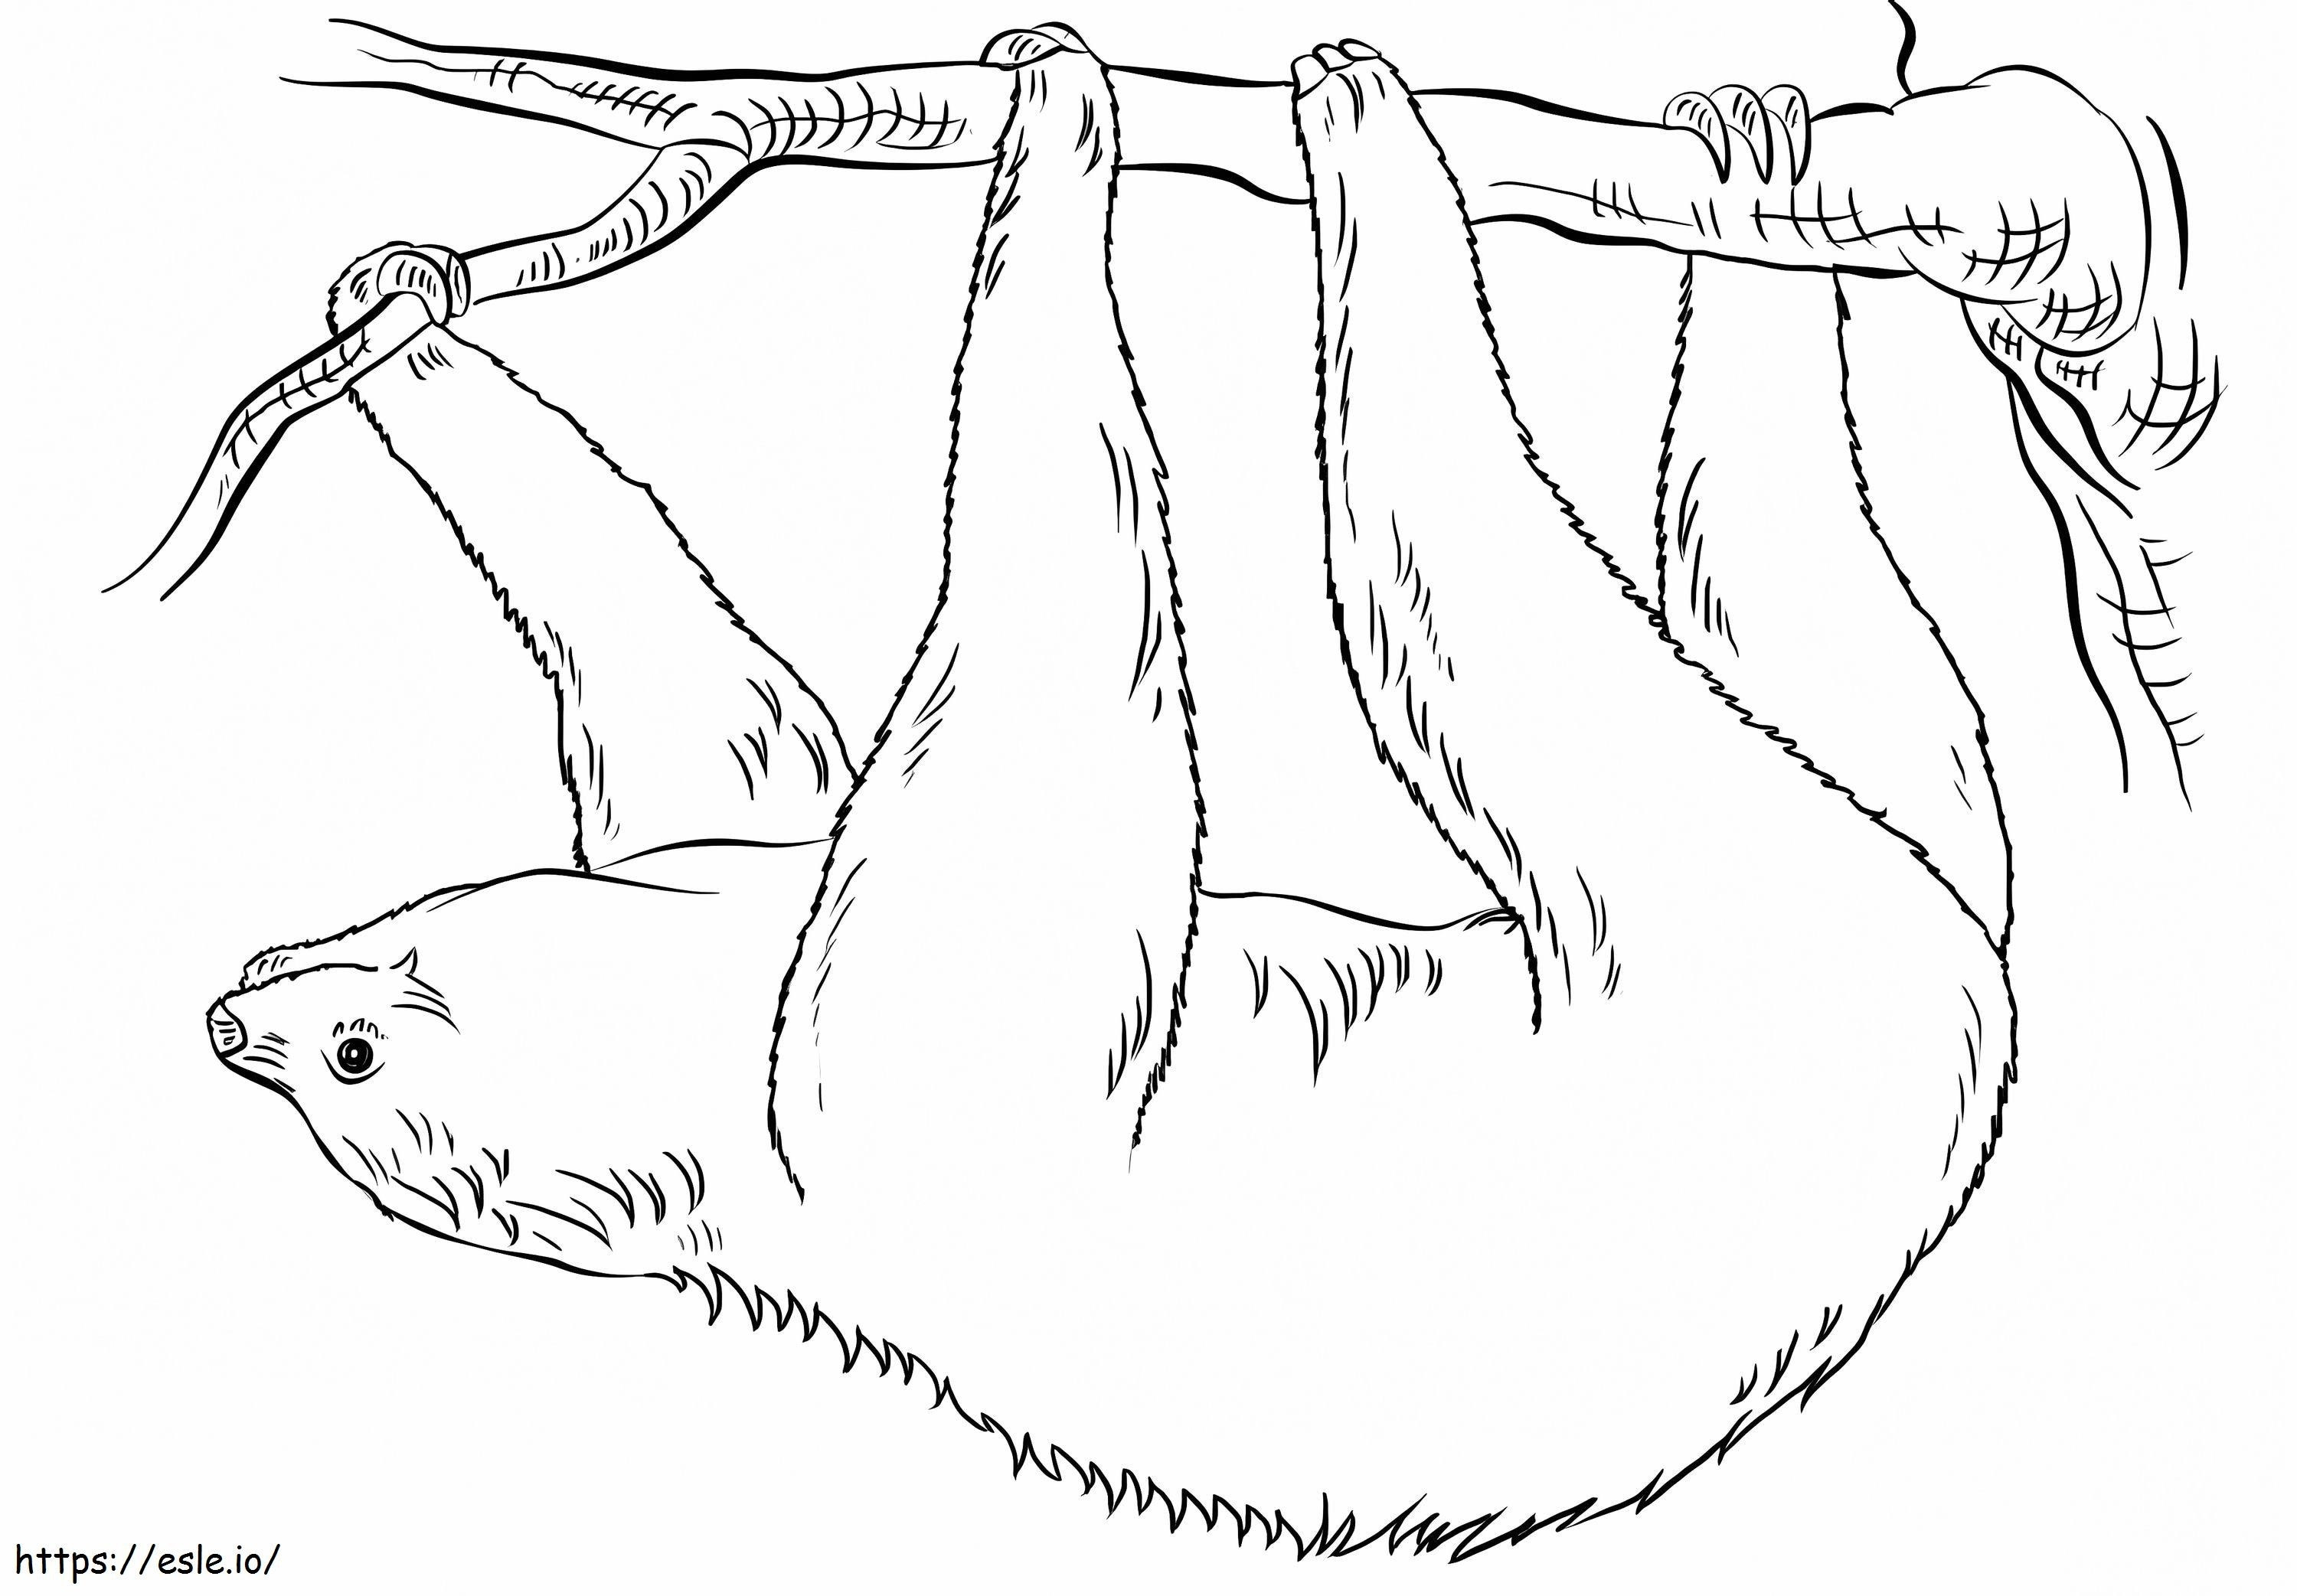 Leneș atârnând cu susul în jos de colorat